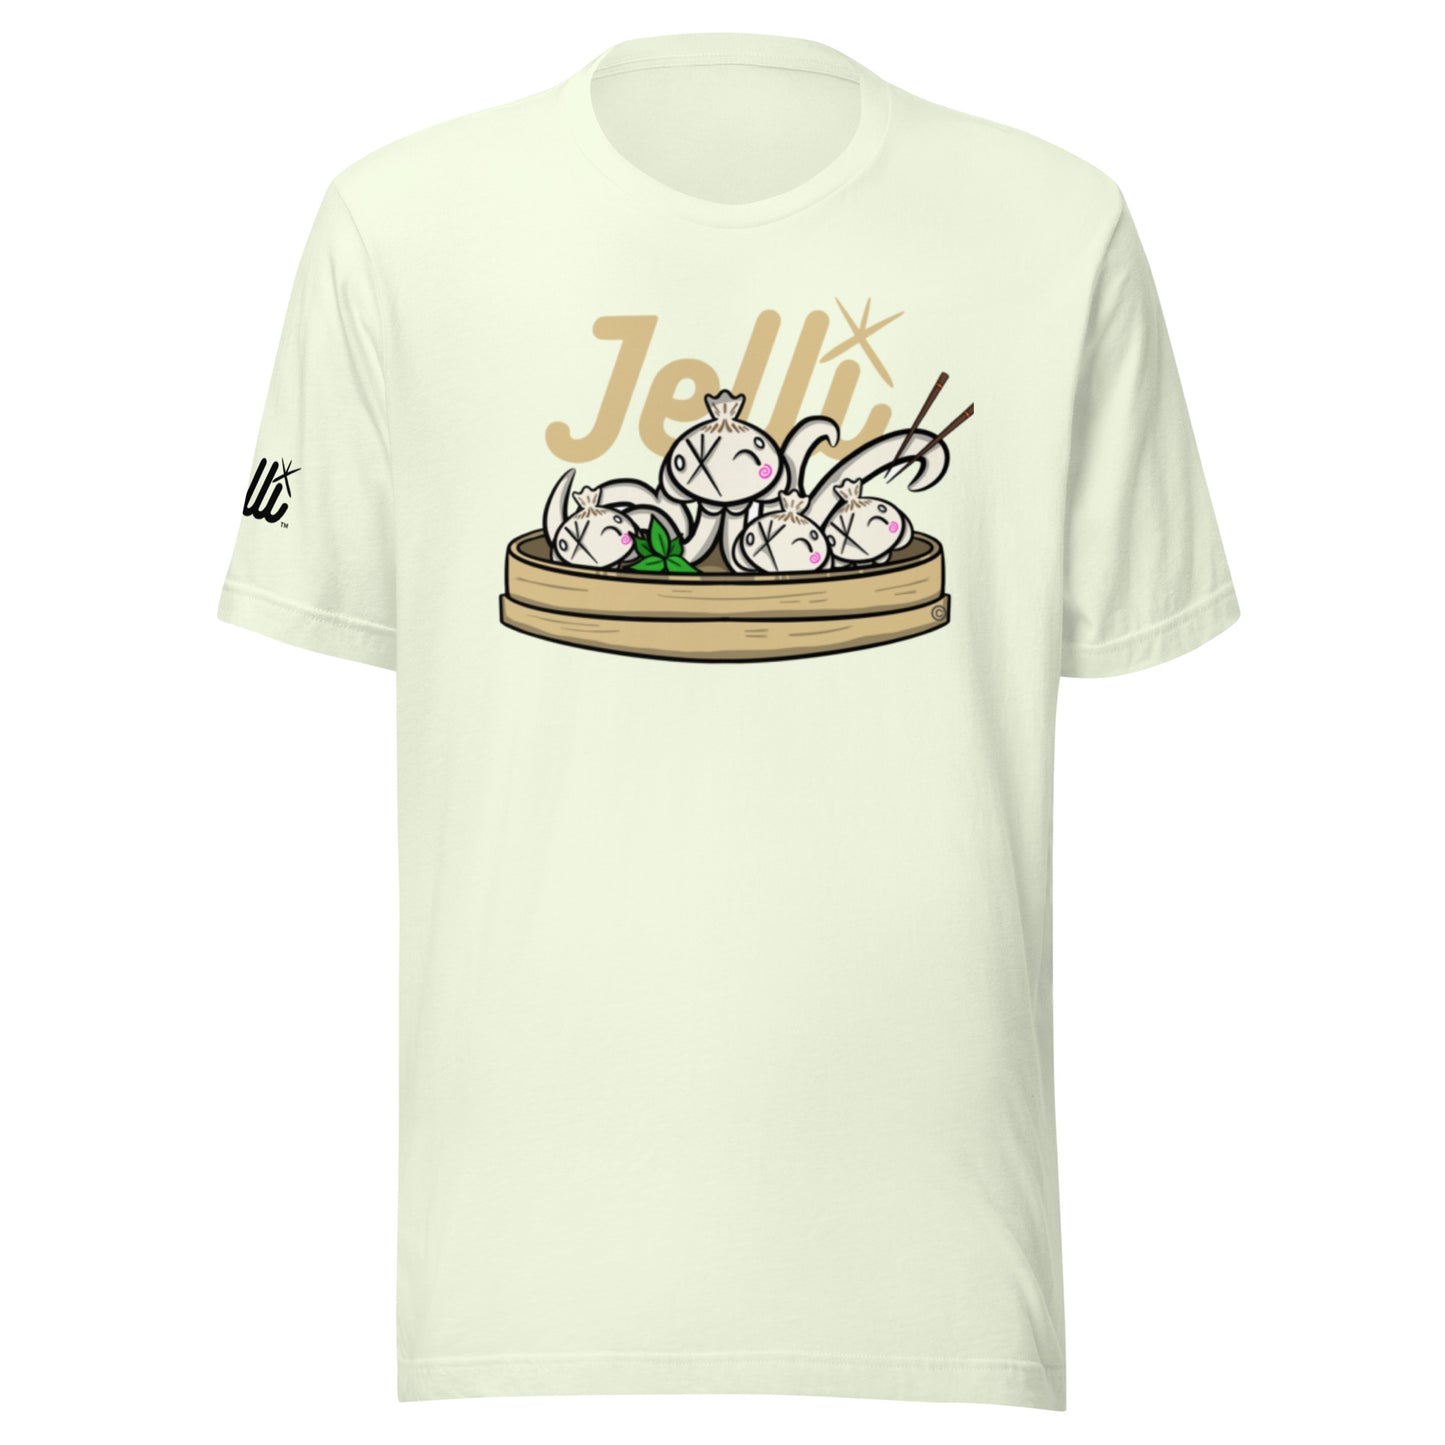 Jelli Dumplings shirt